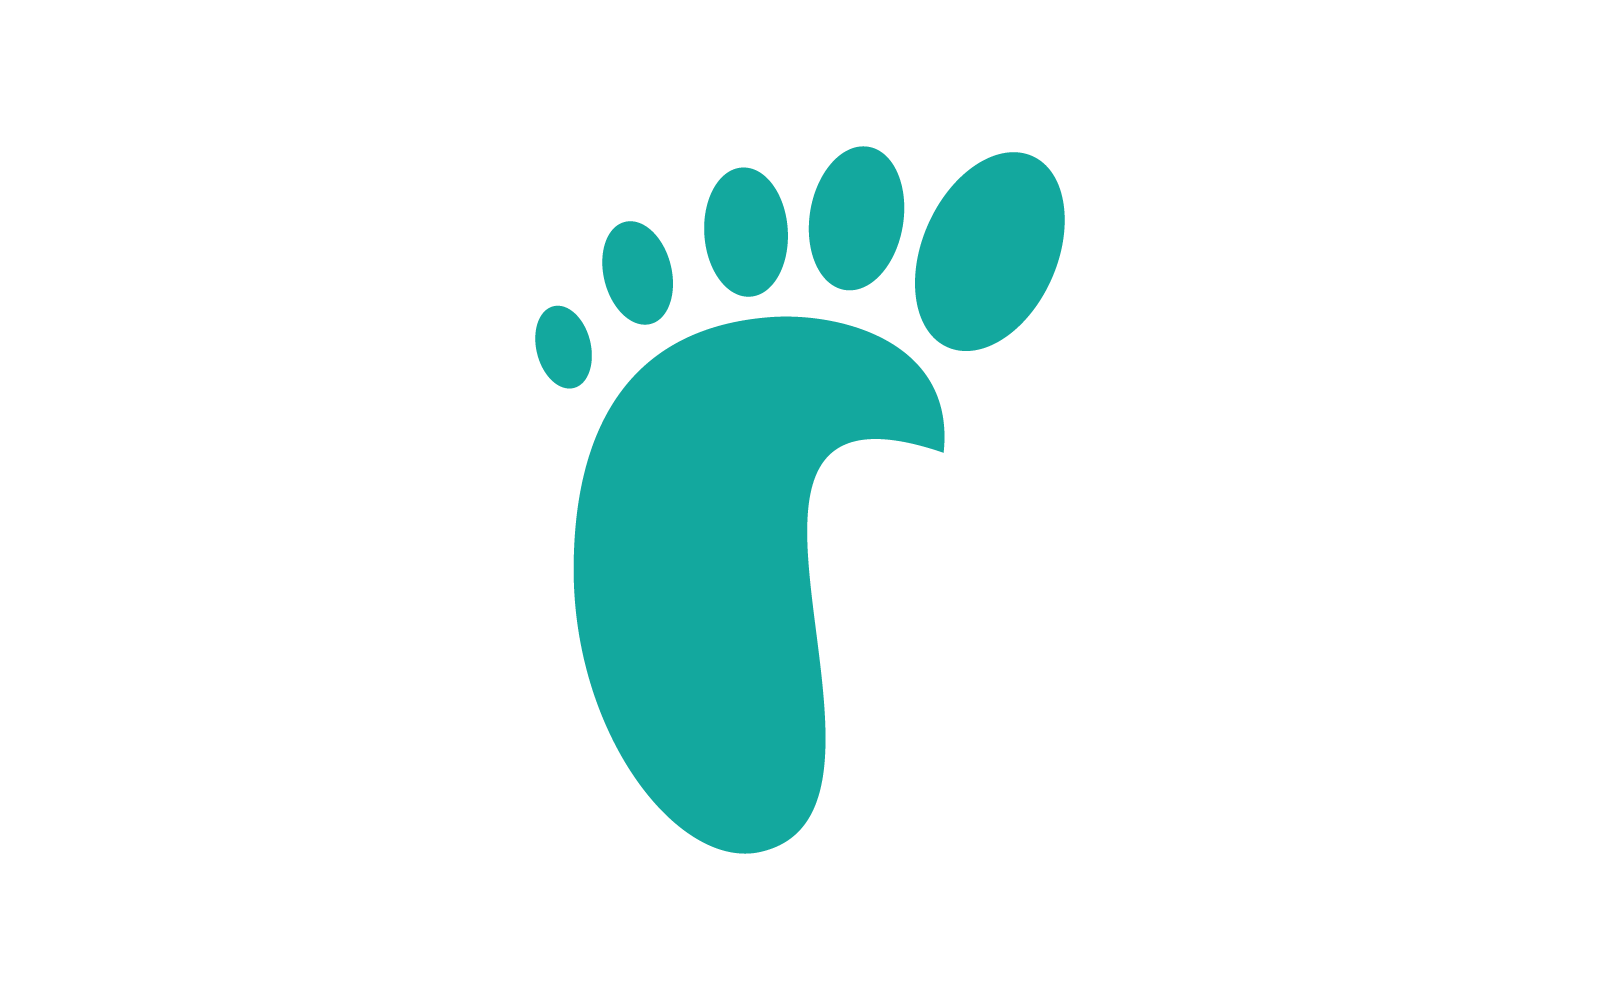 Pielęgnacja stóp ilustracja logo ikona wektor wzór